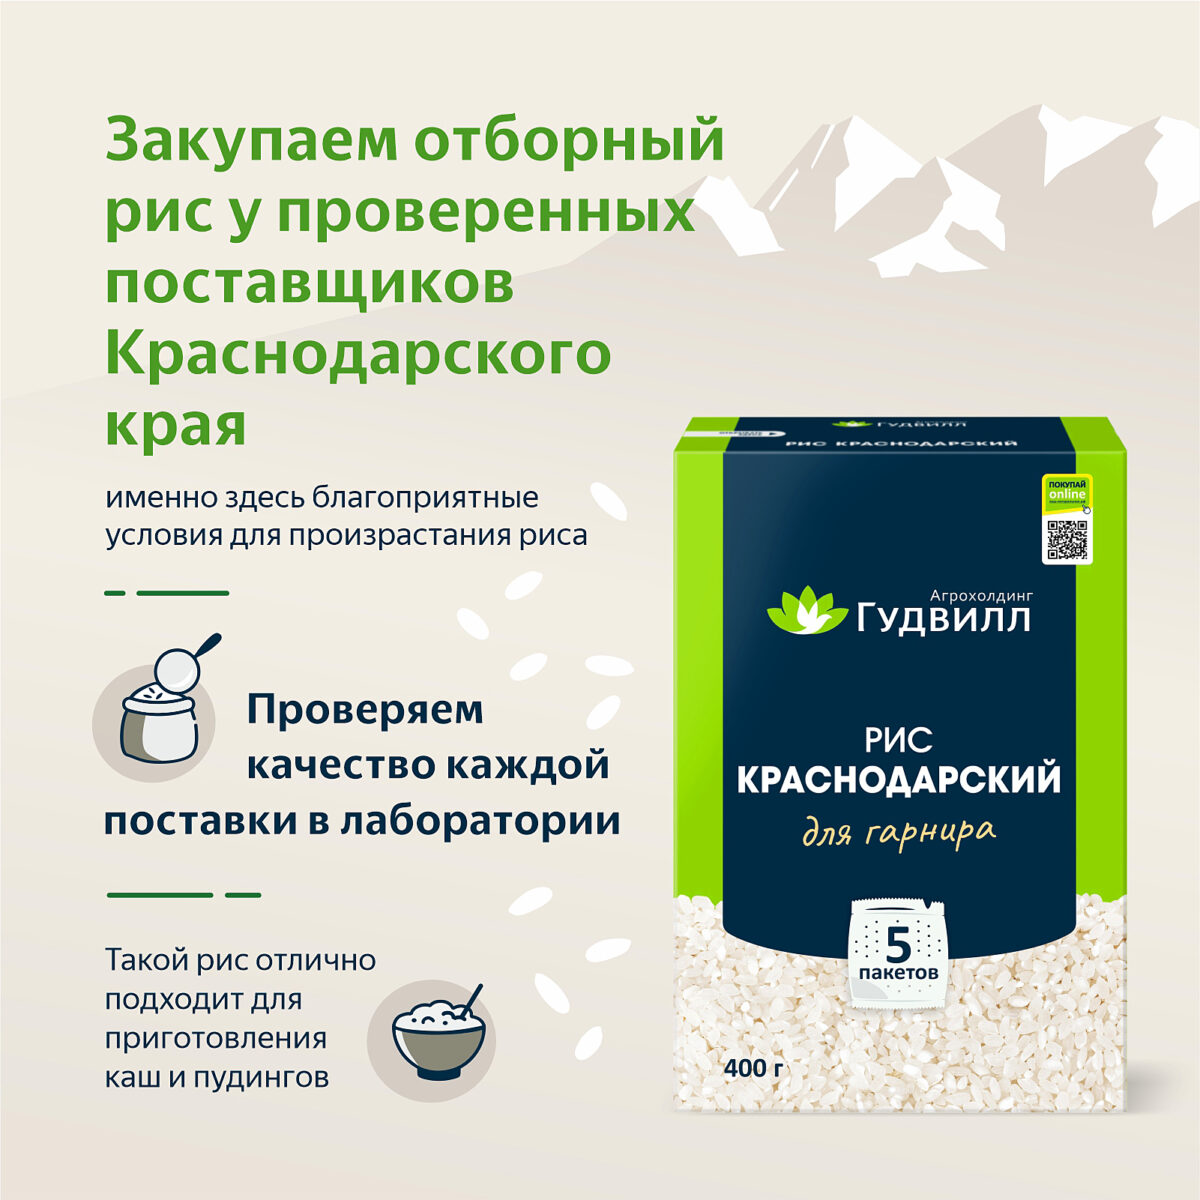 Рис краснодарский в варочных пакетах 400 гр. Алтайские крупы - Интернет-магазин